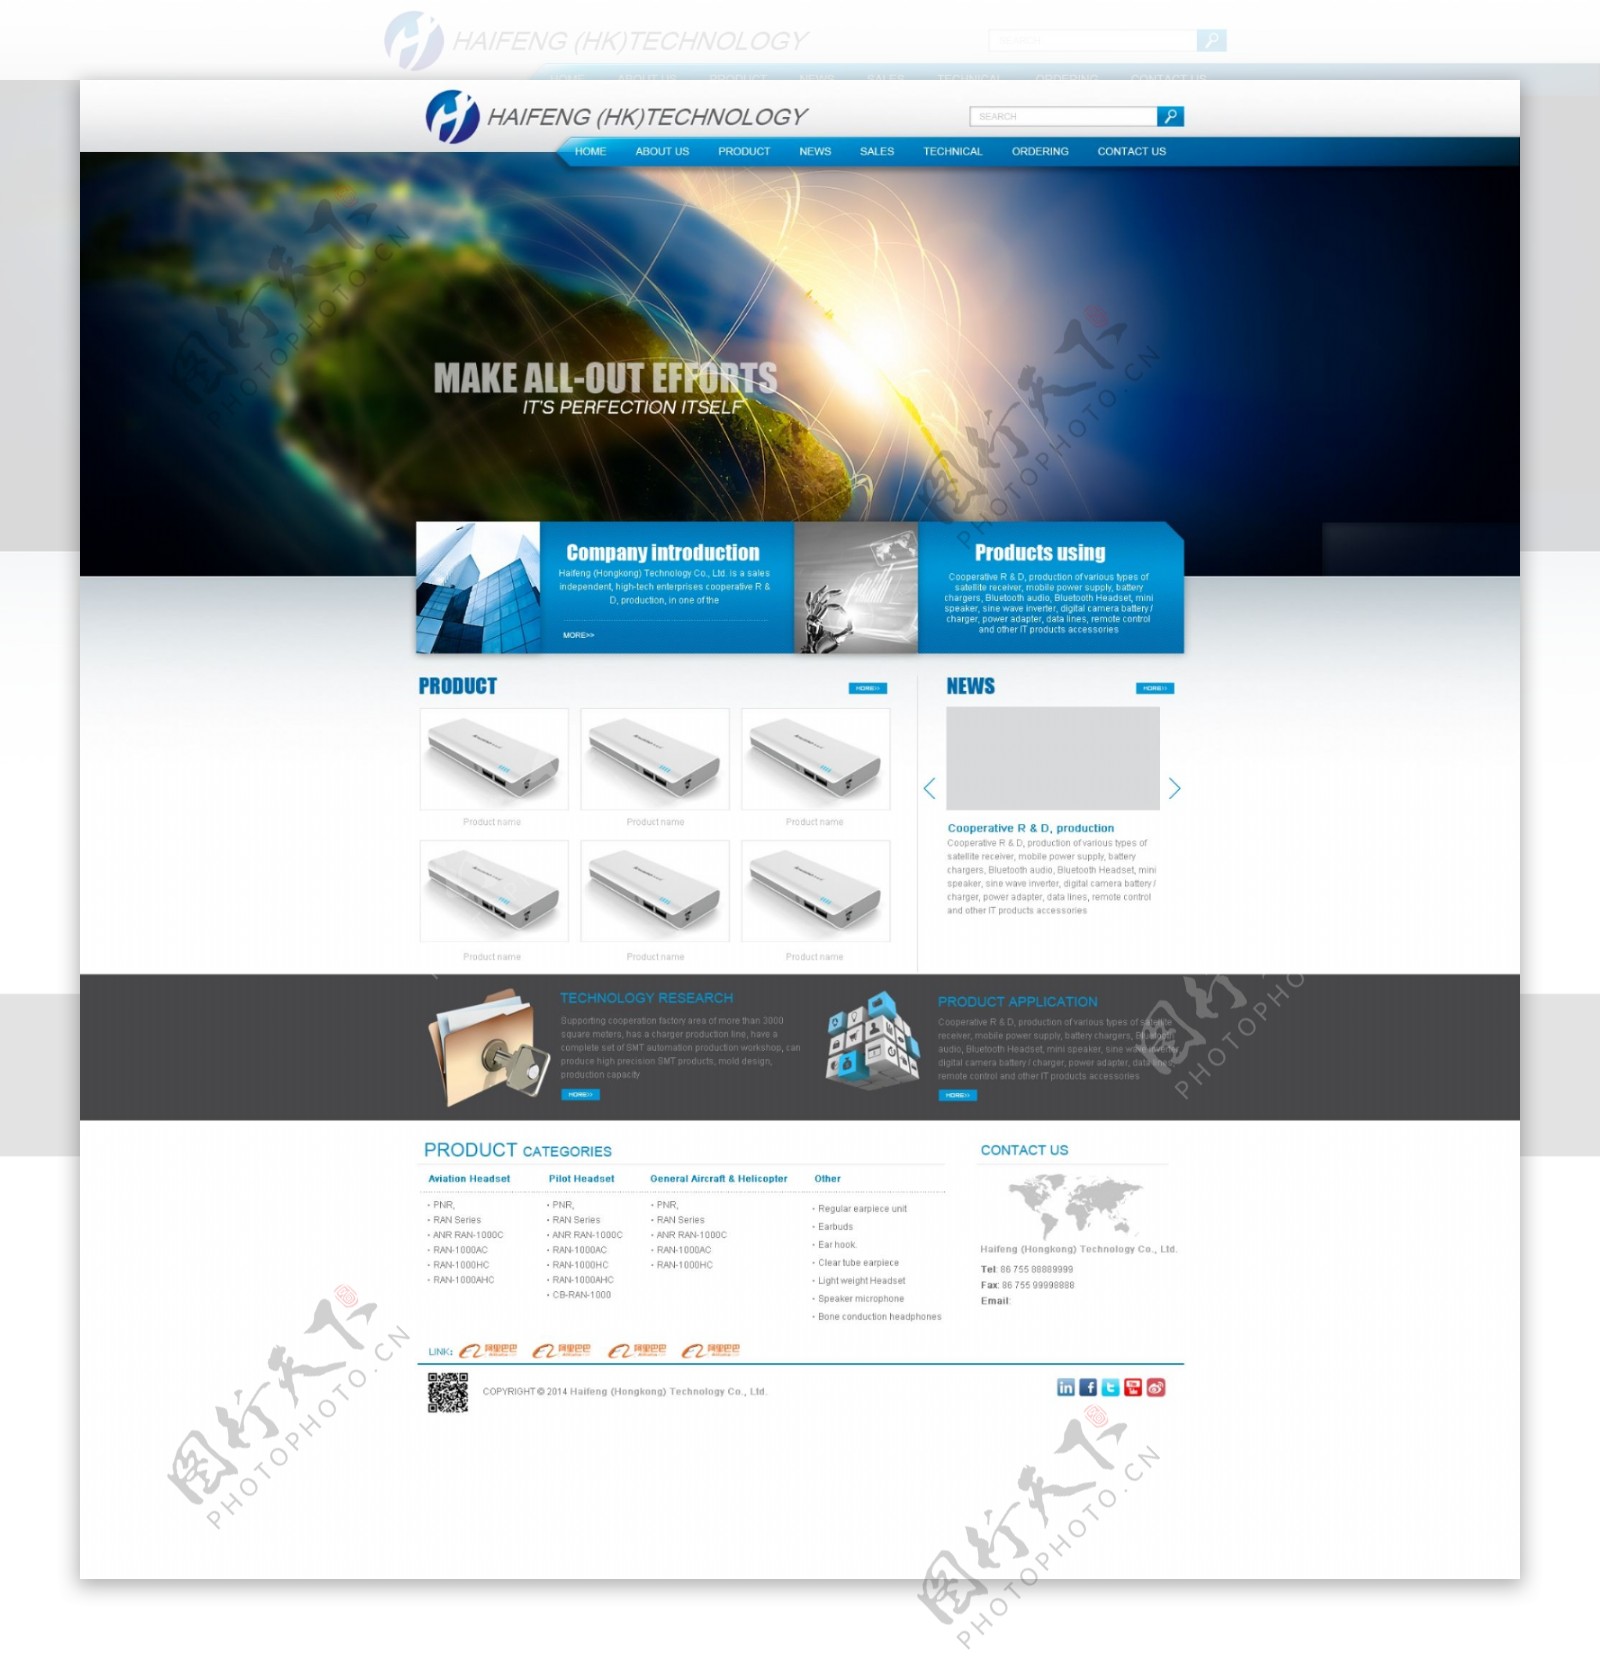 网站设计公司科技信息